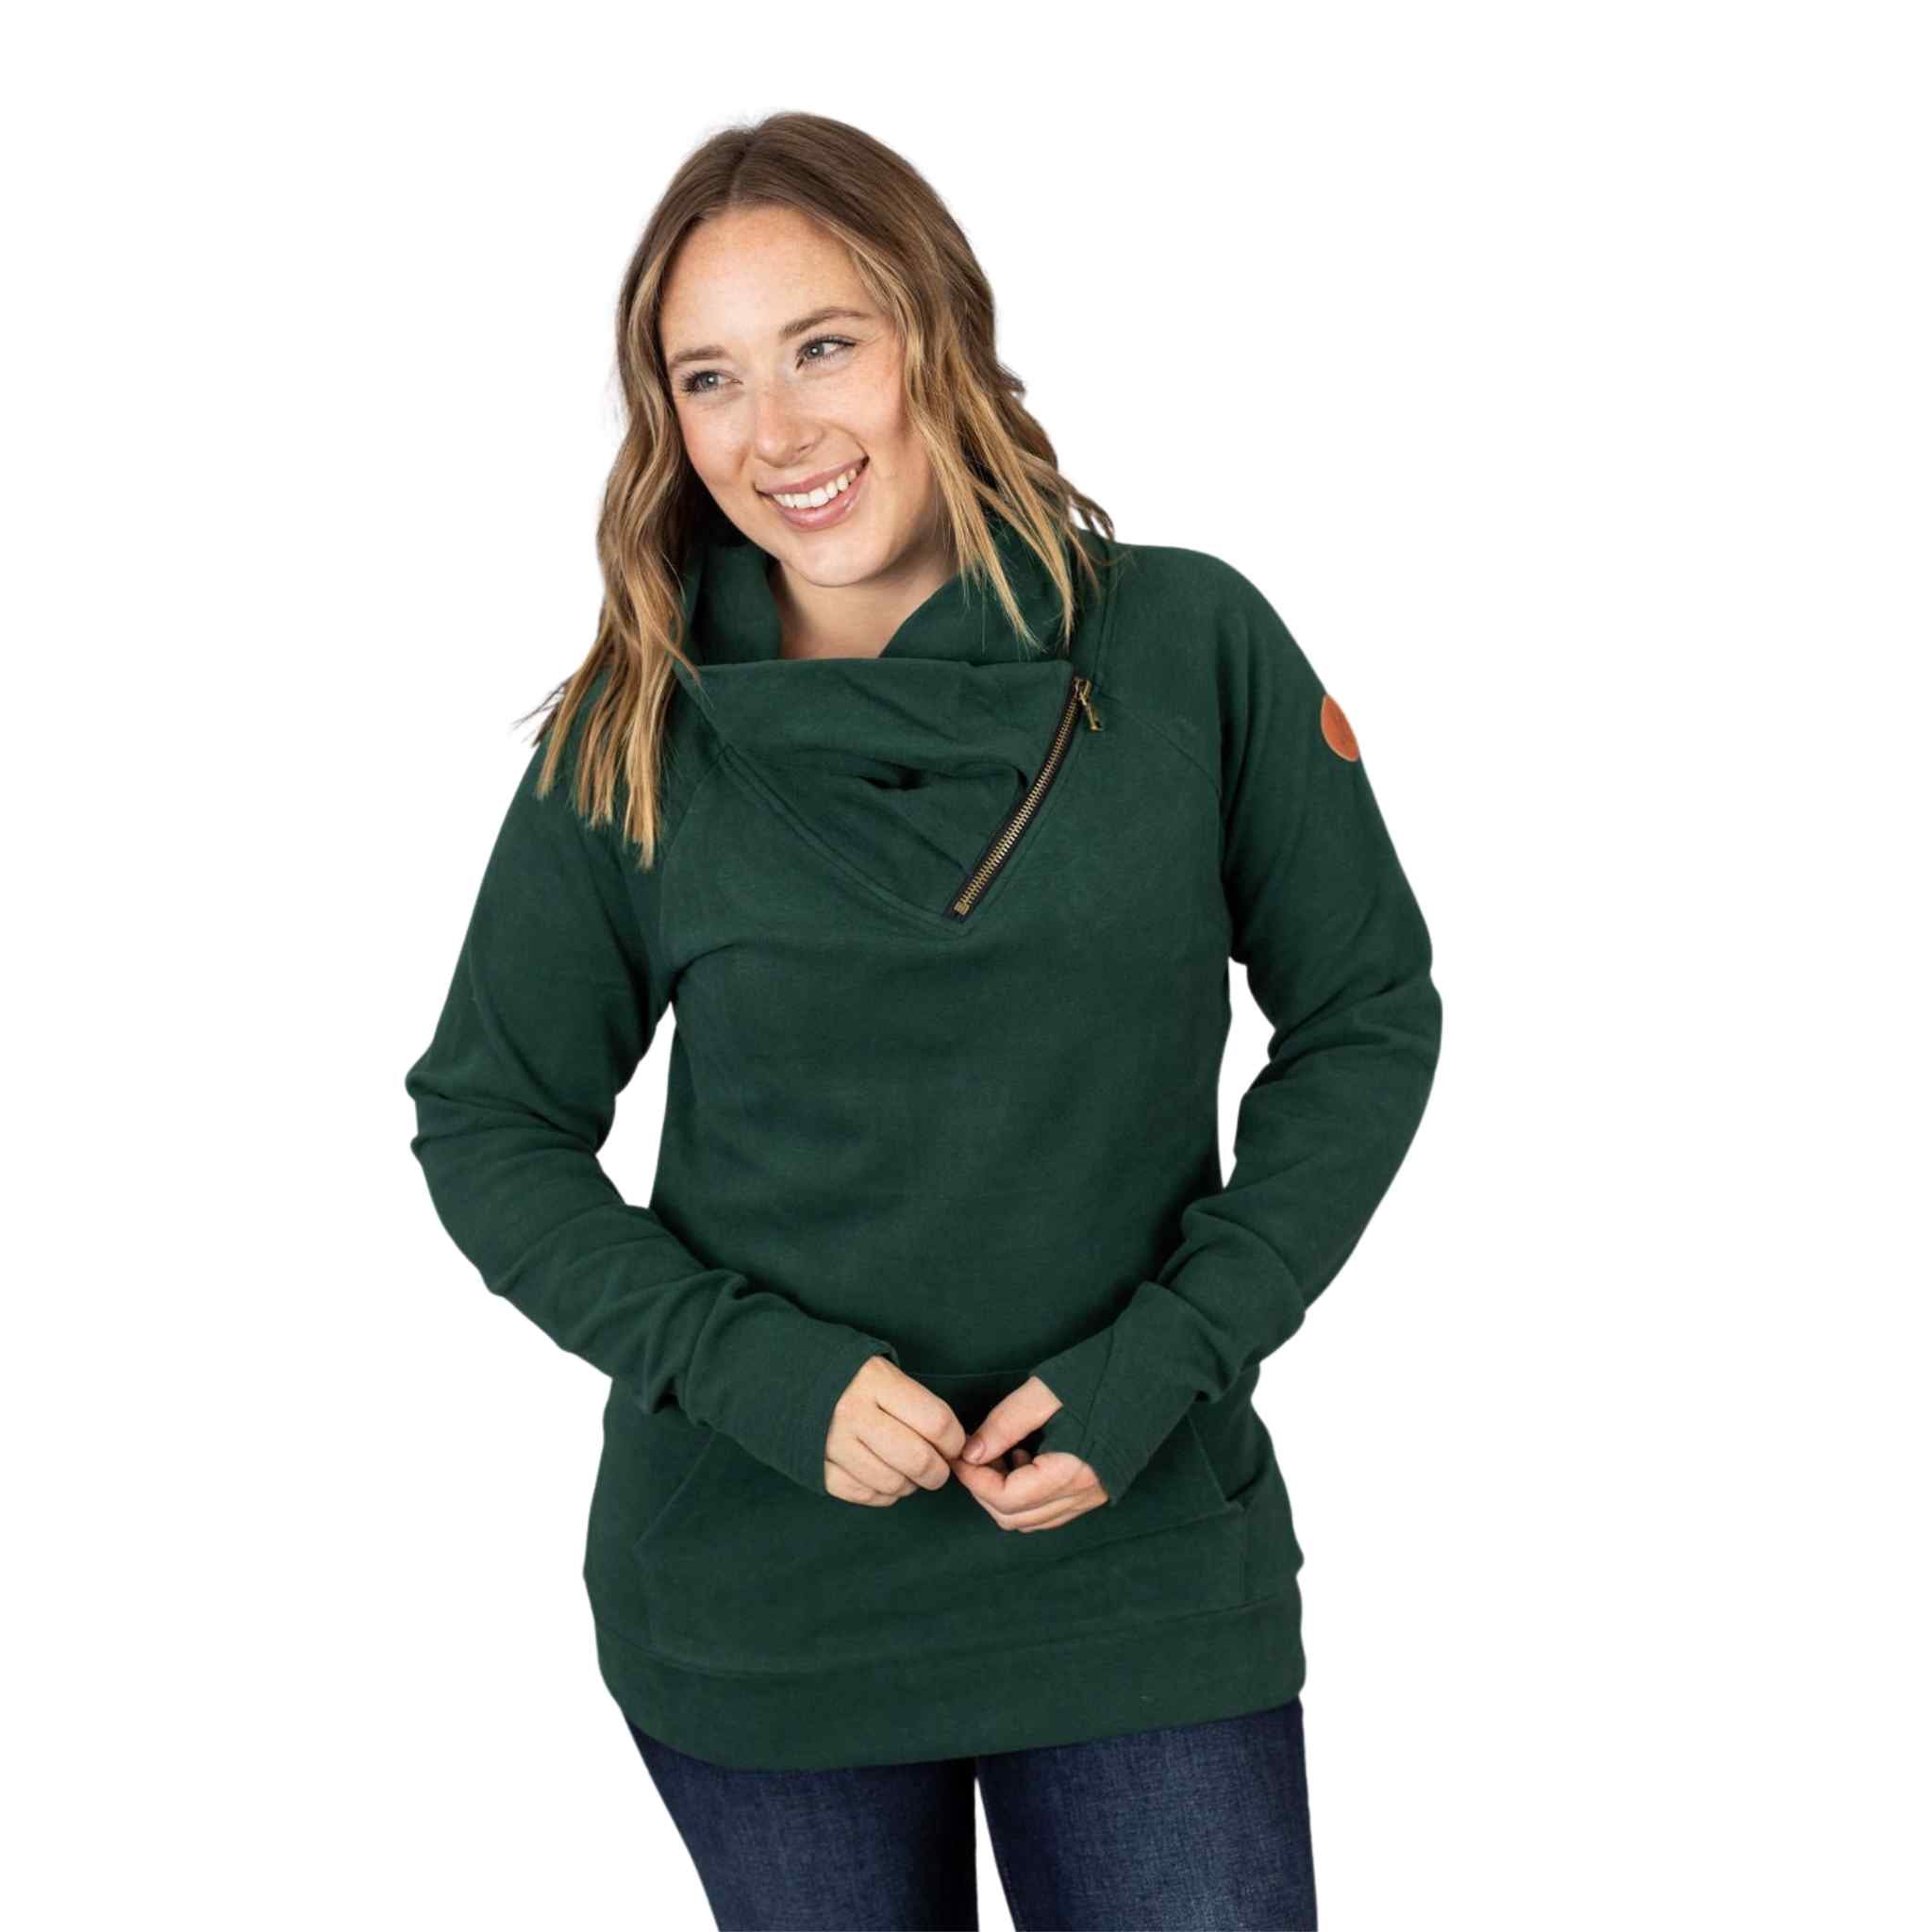 MM ZipCowl Sweatshirt - Evergreen